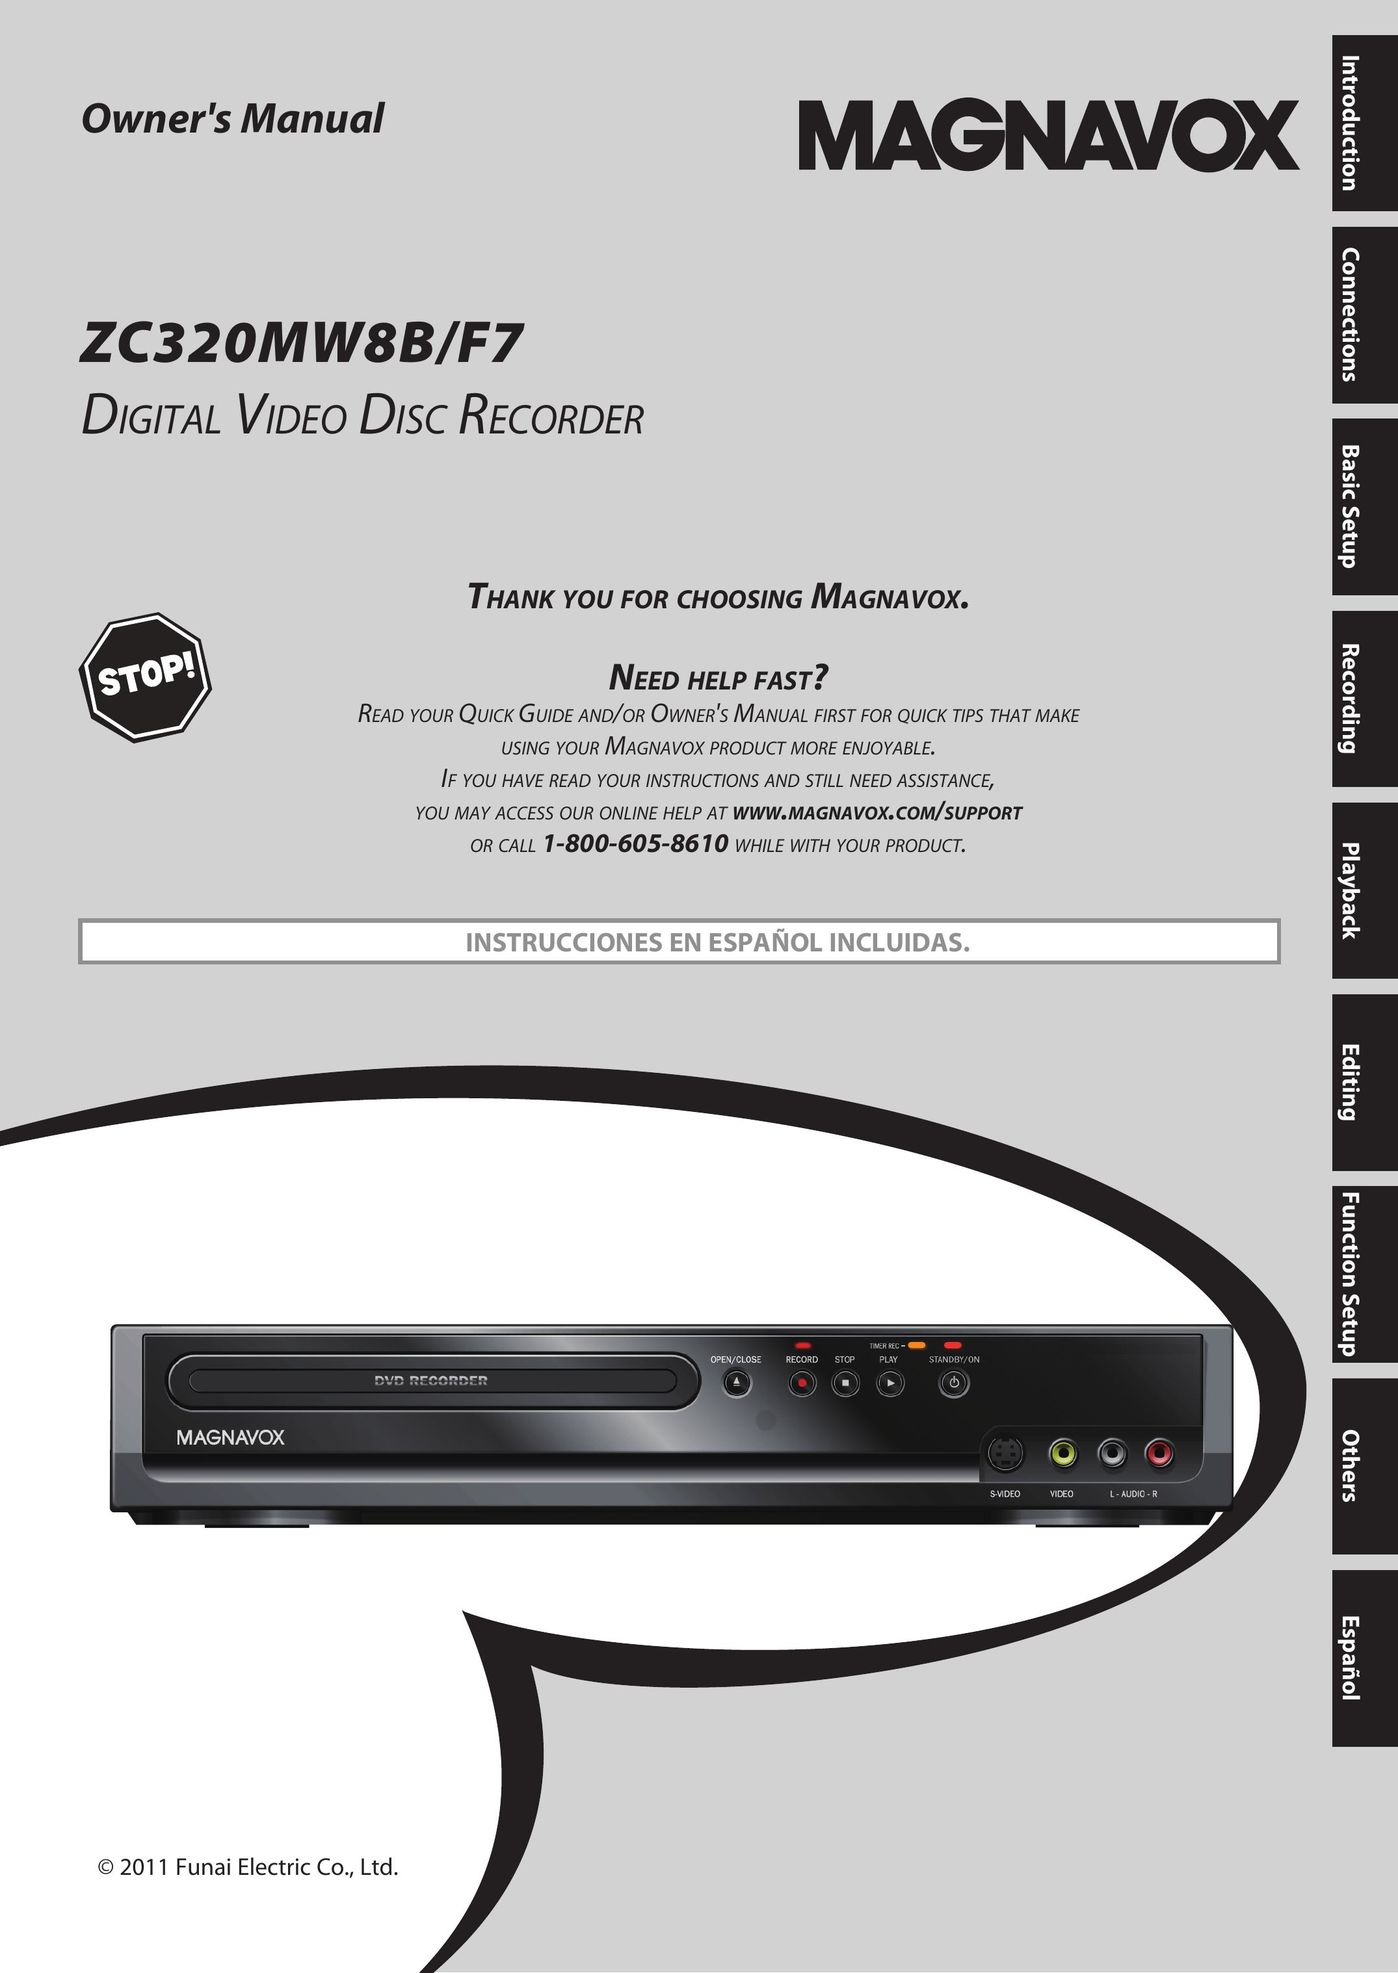 Magnavox ZC320MW8B/F7 DVD Recorder User Manual